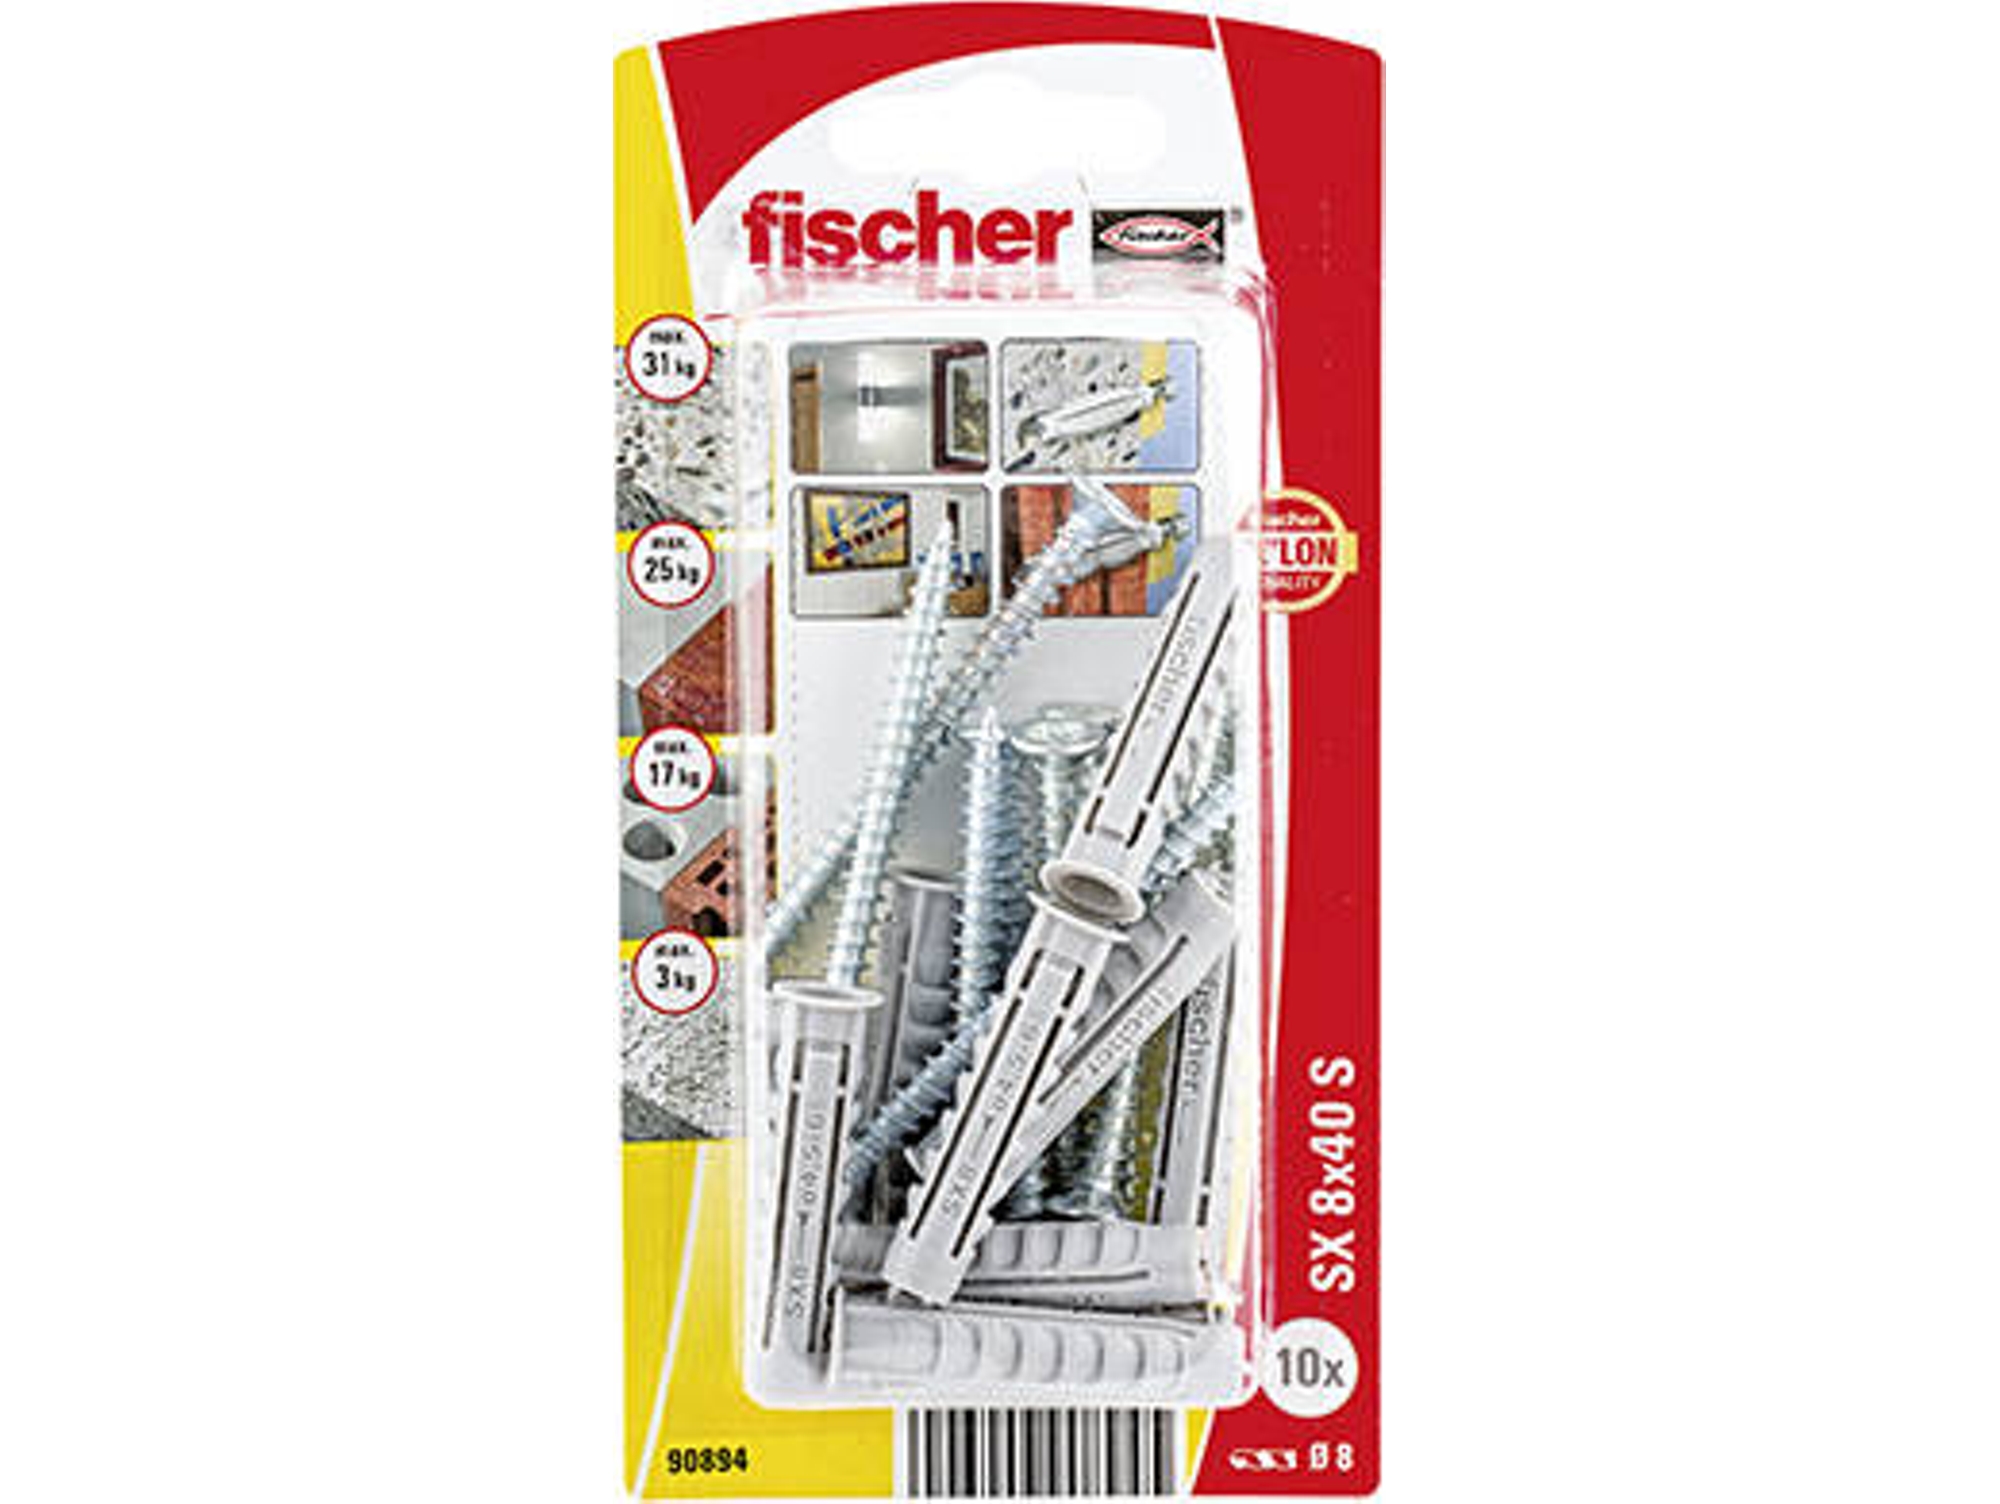 TACO FISCHER SX 8×40